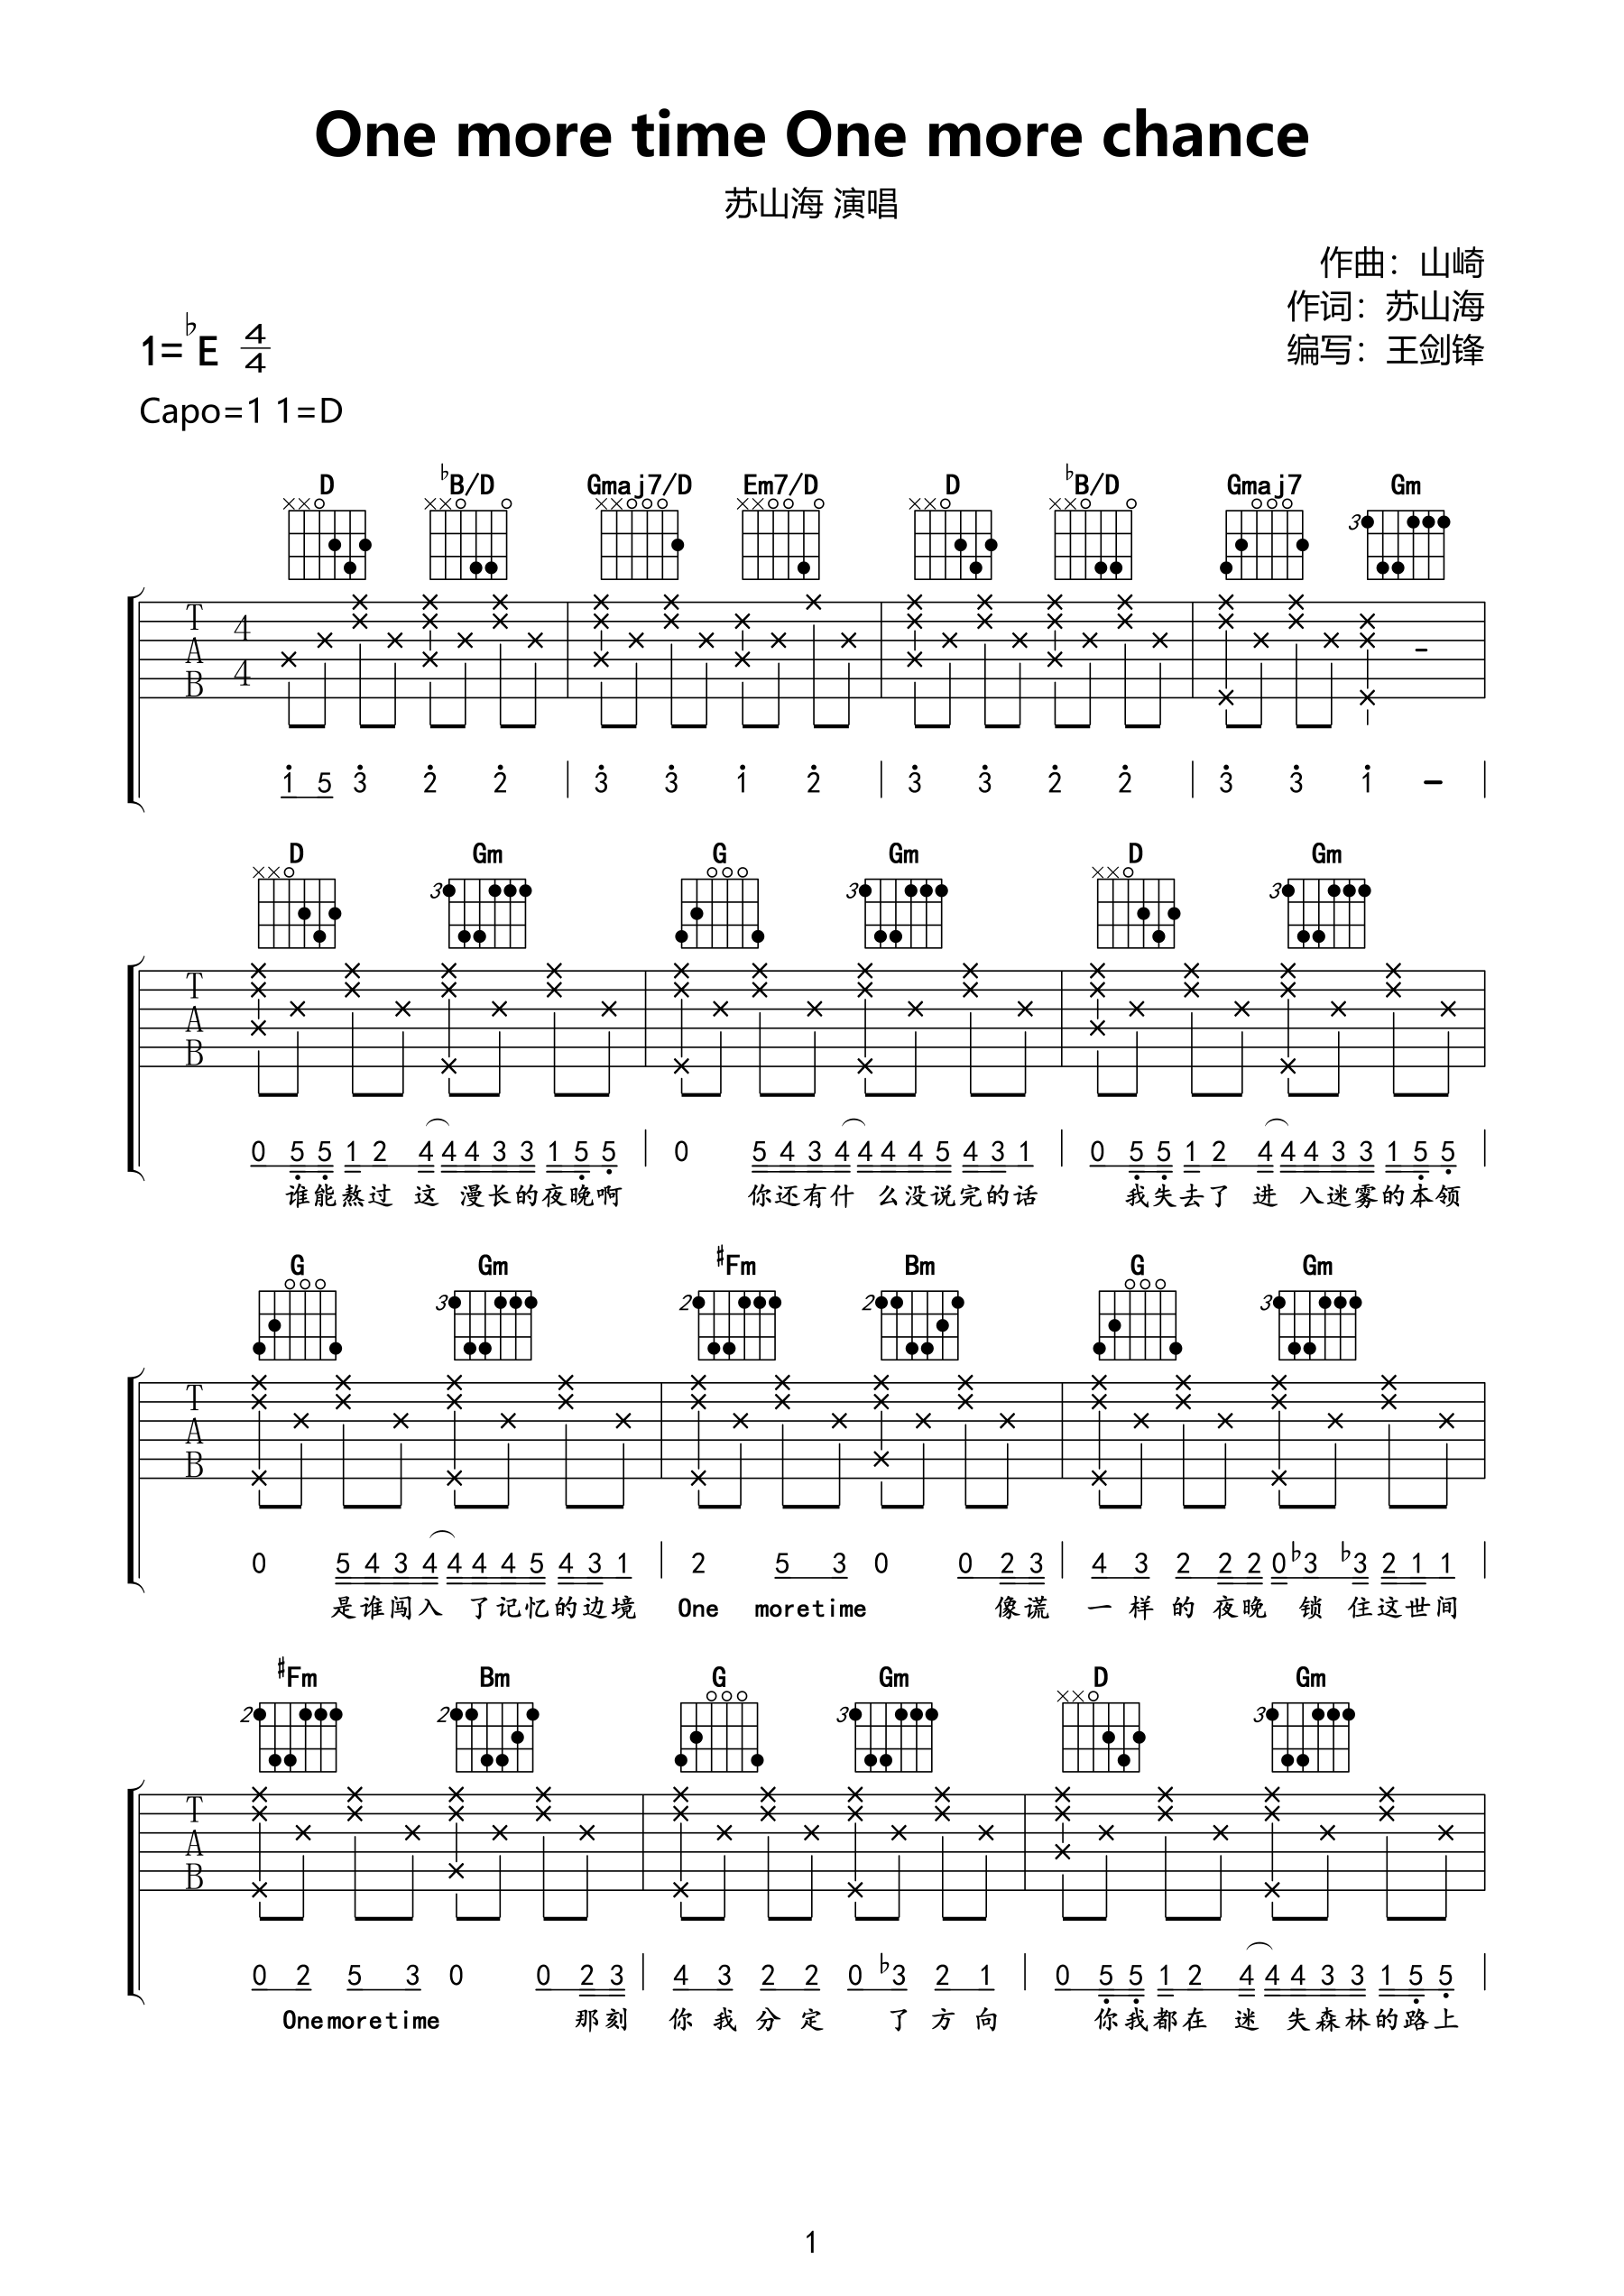 单音练习曲目吉他教程谱 - 琴谱网